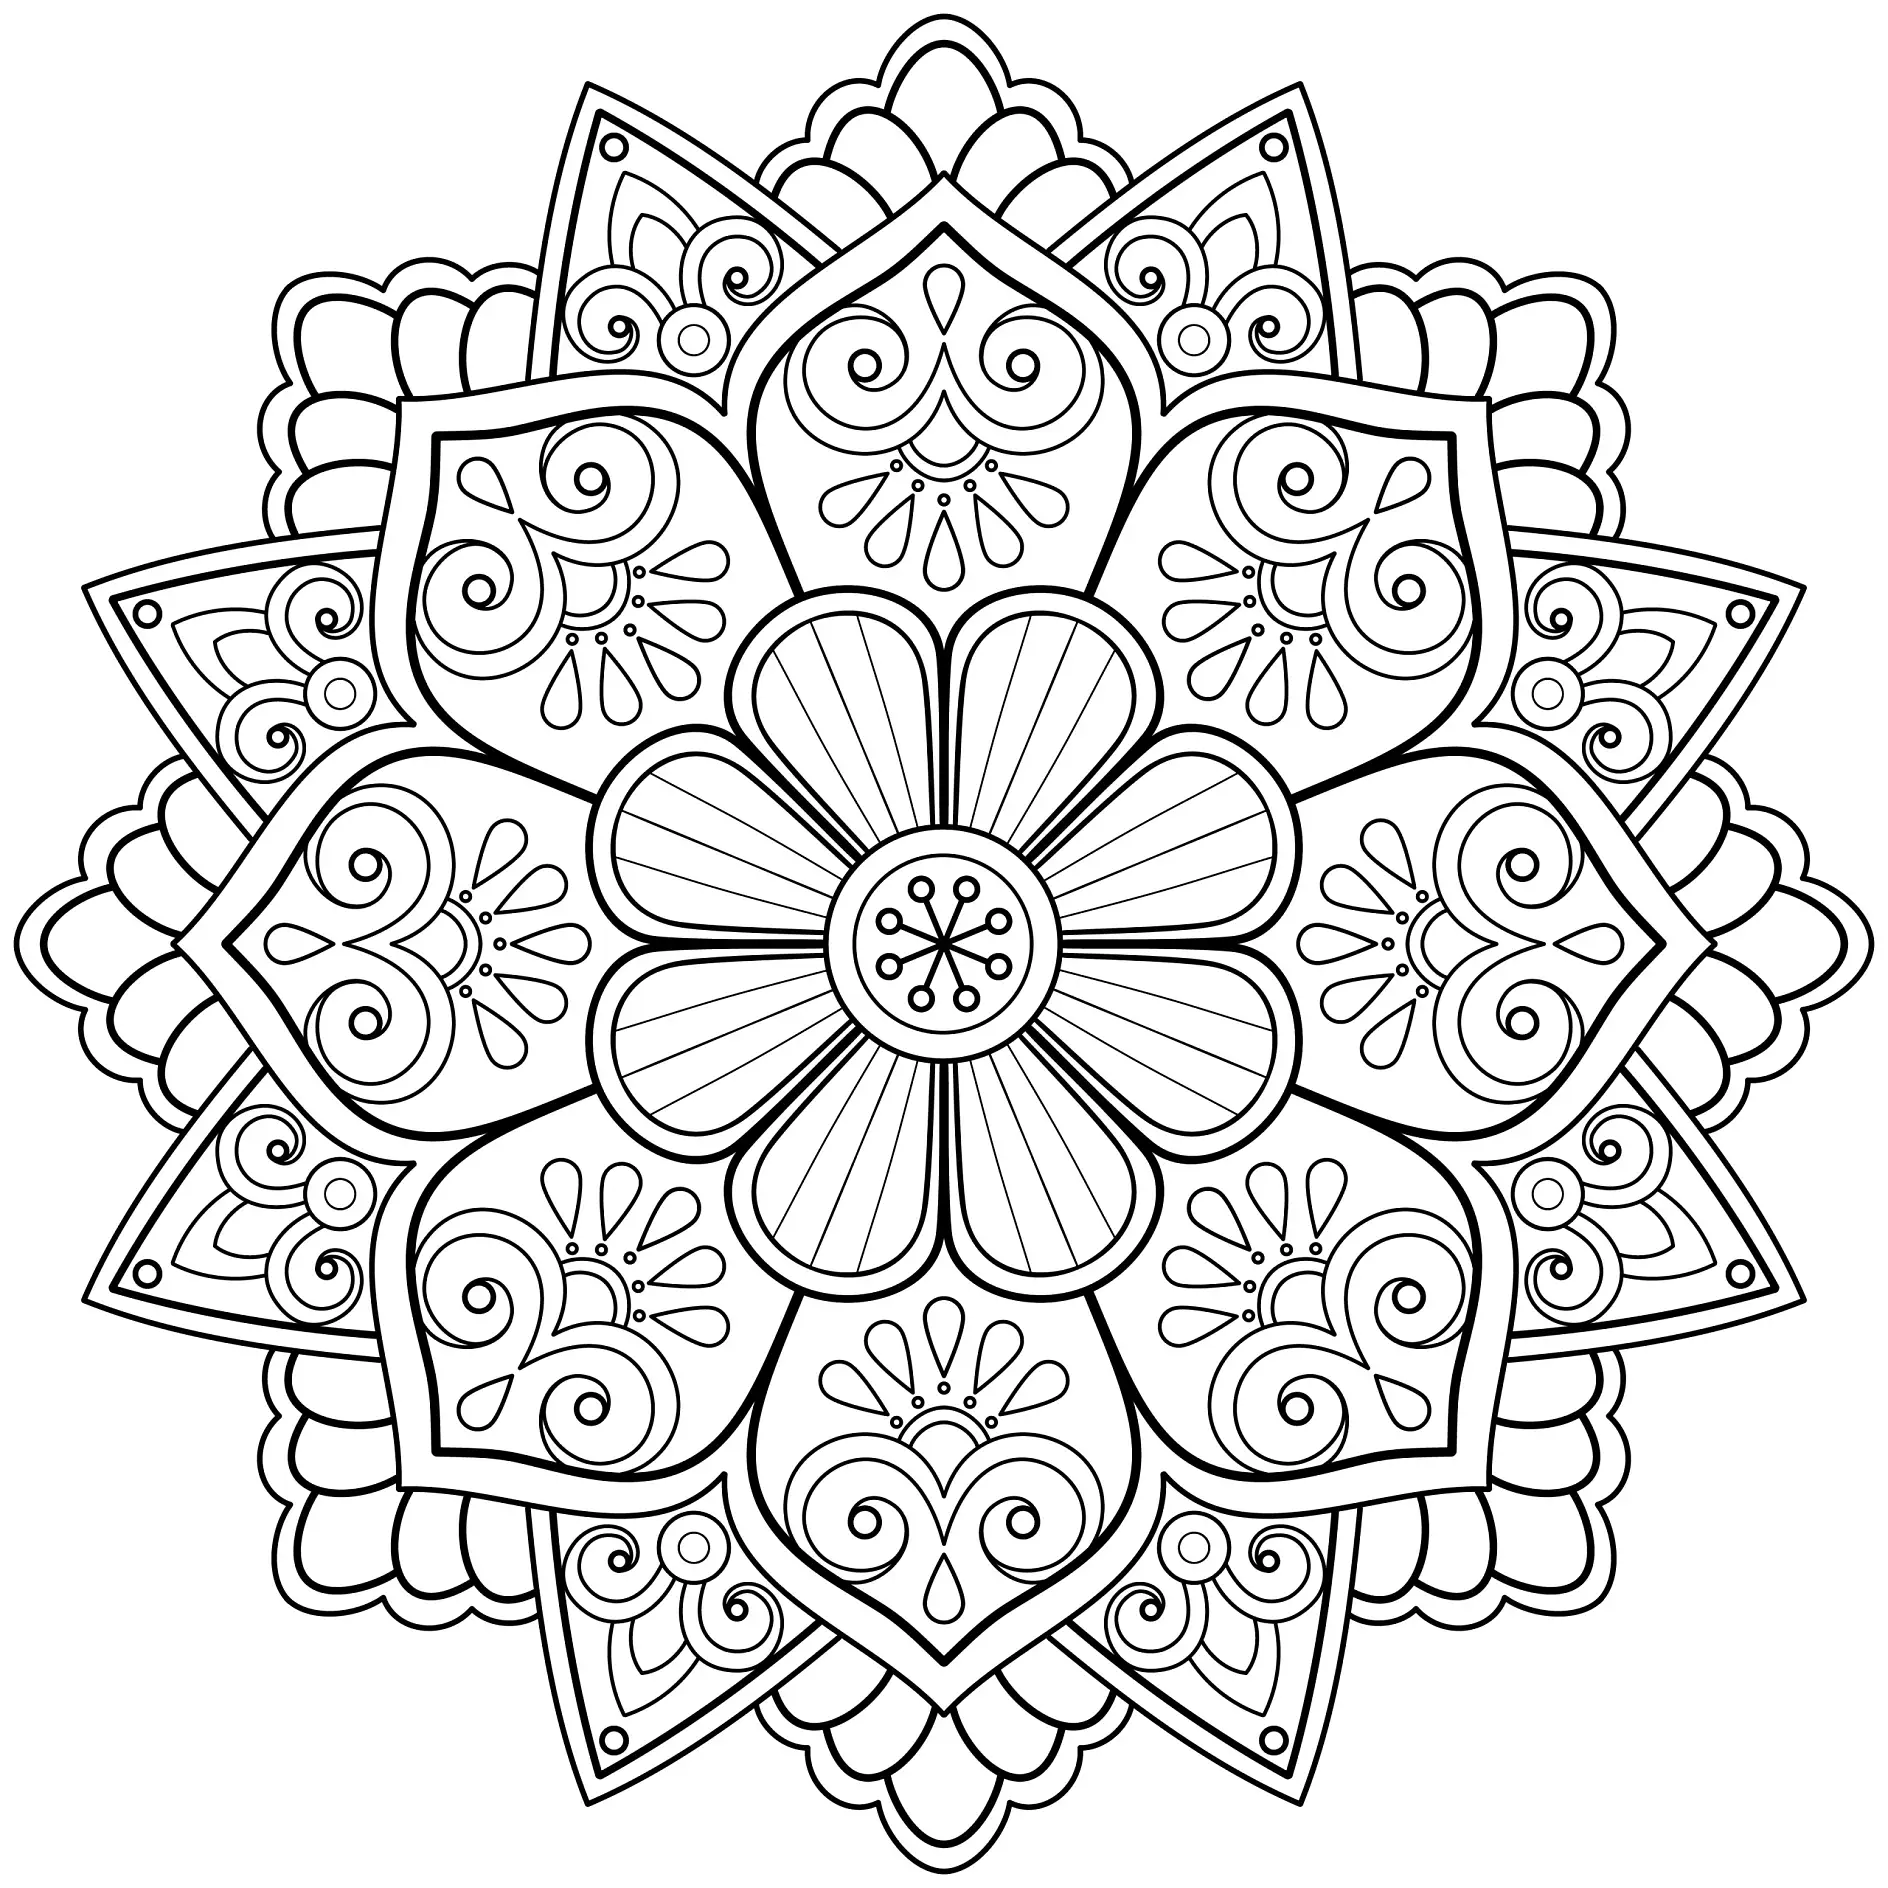 Ausmalbild Mandala mit Blumen und detaillierten Mustern